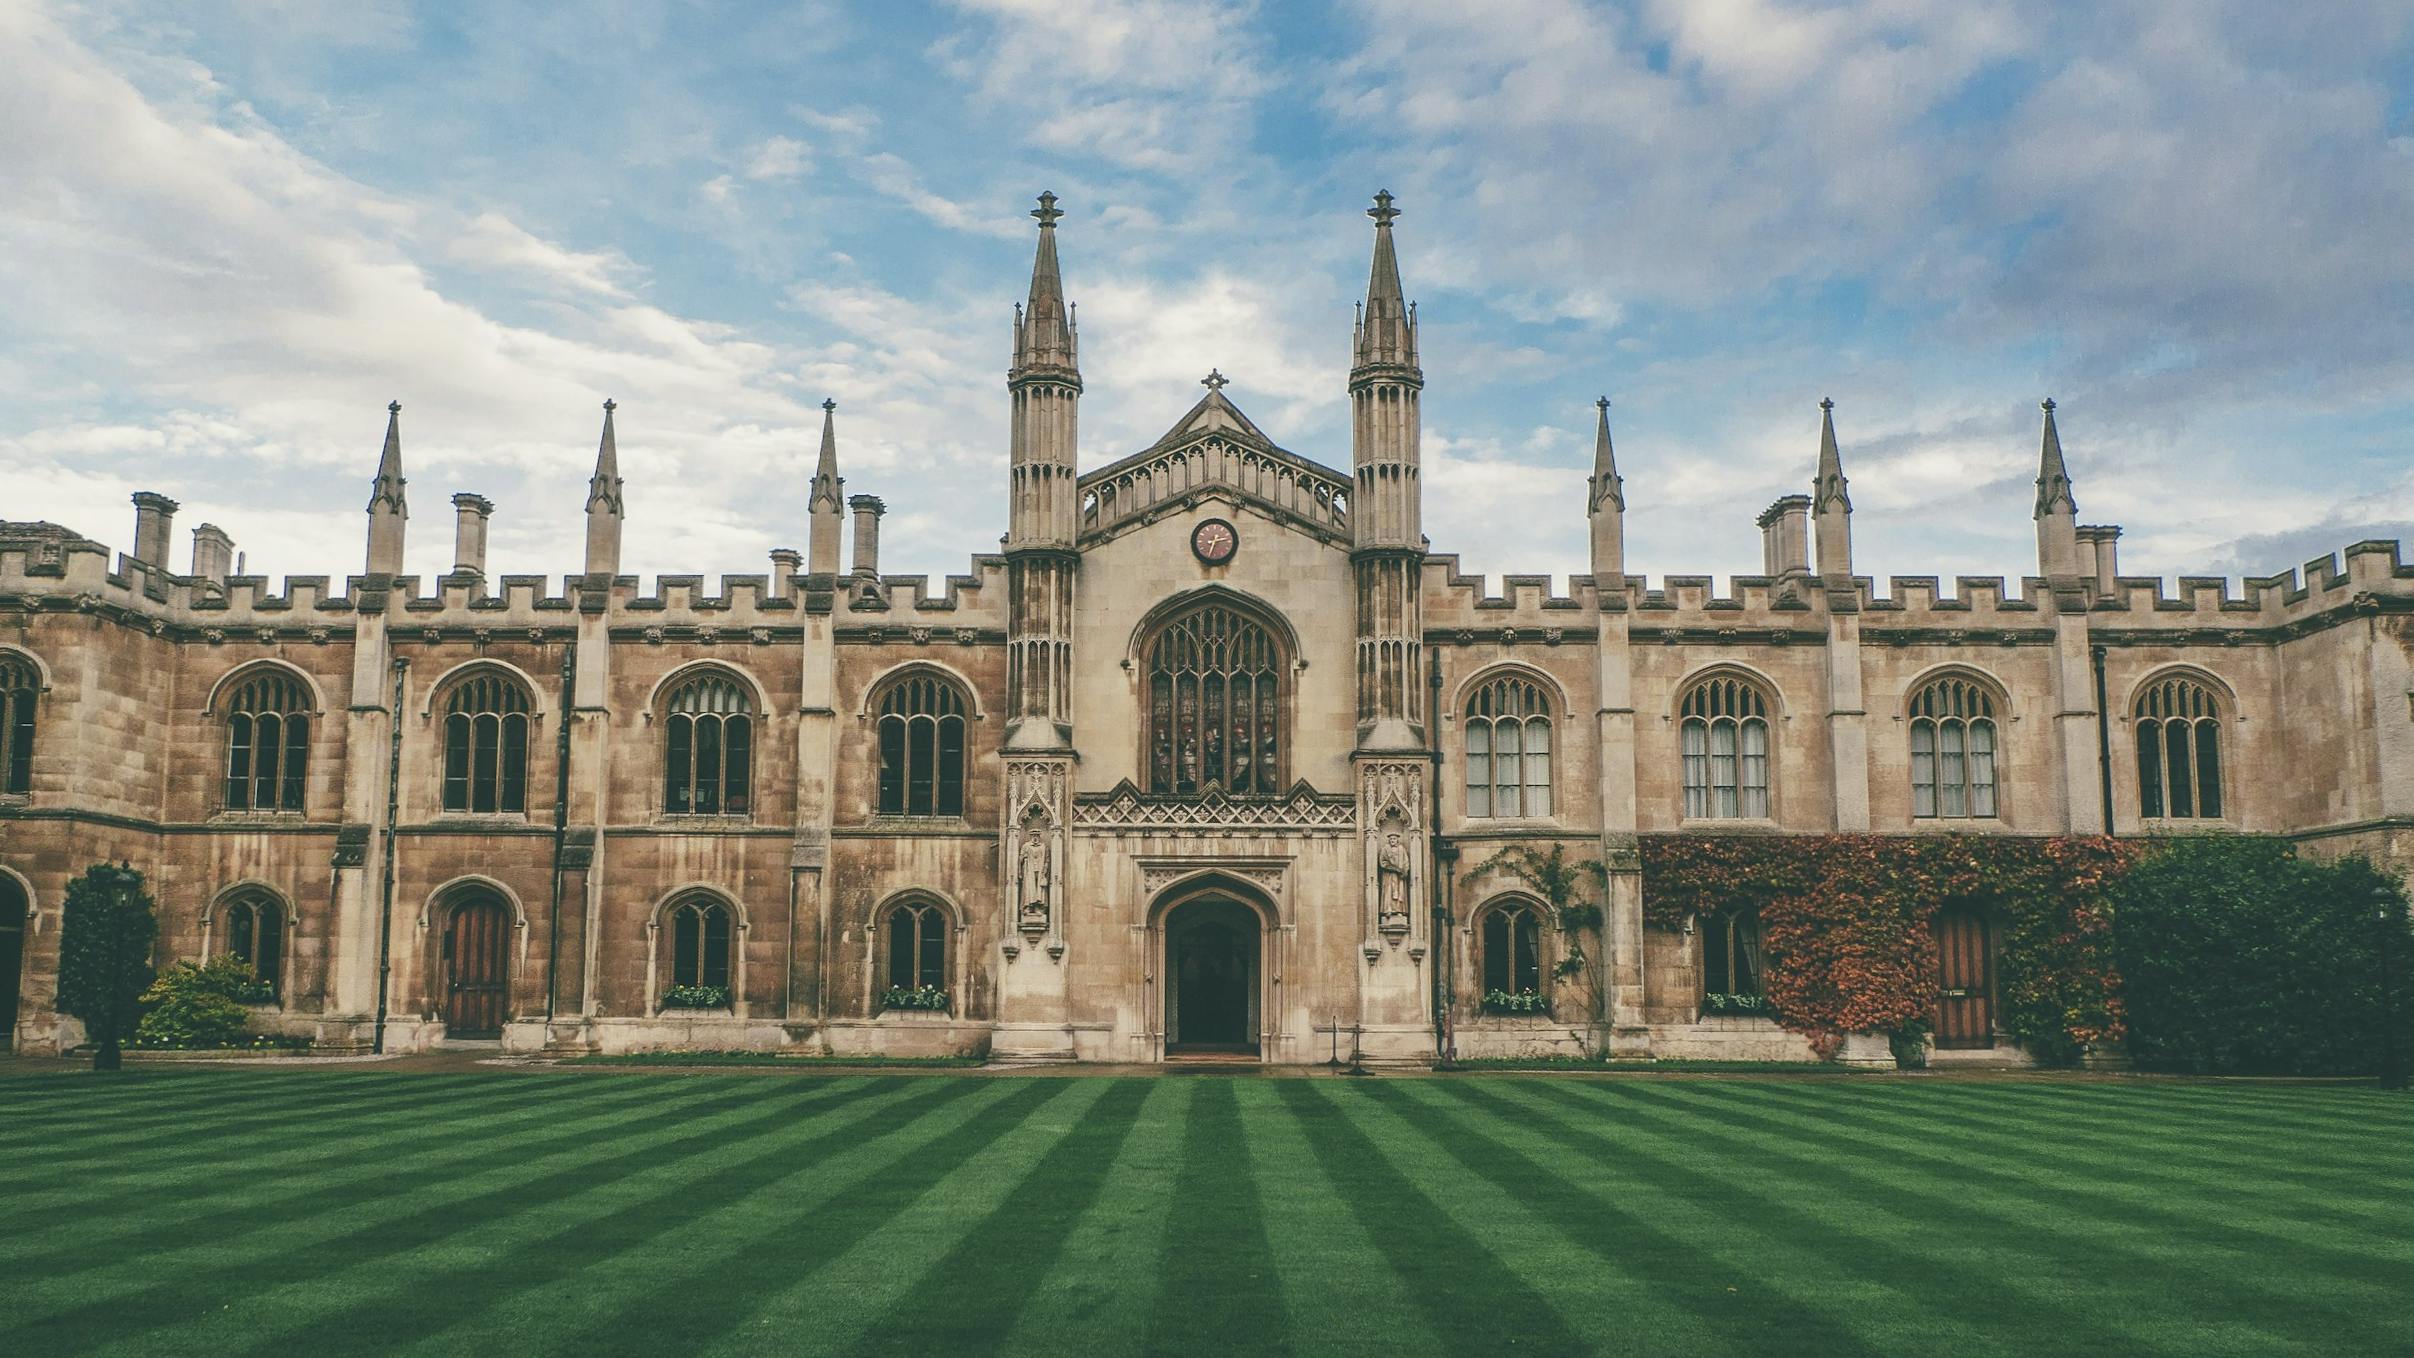 Edificio storico dell'Università di Cambridge fotografato in una giornata di cielo azzurro.